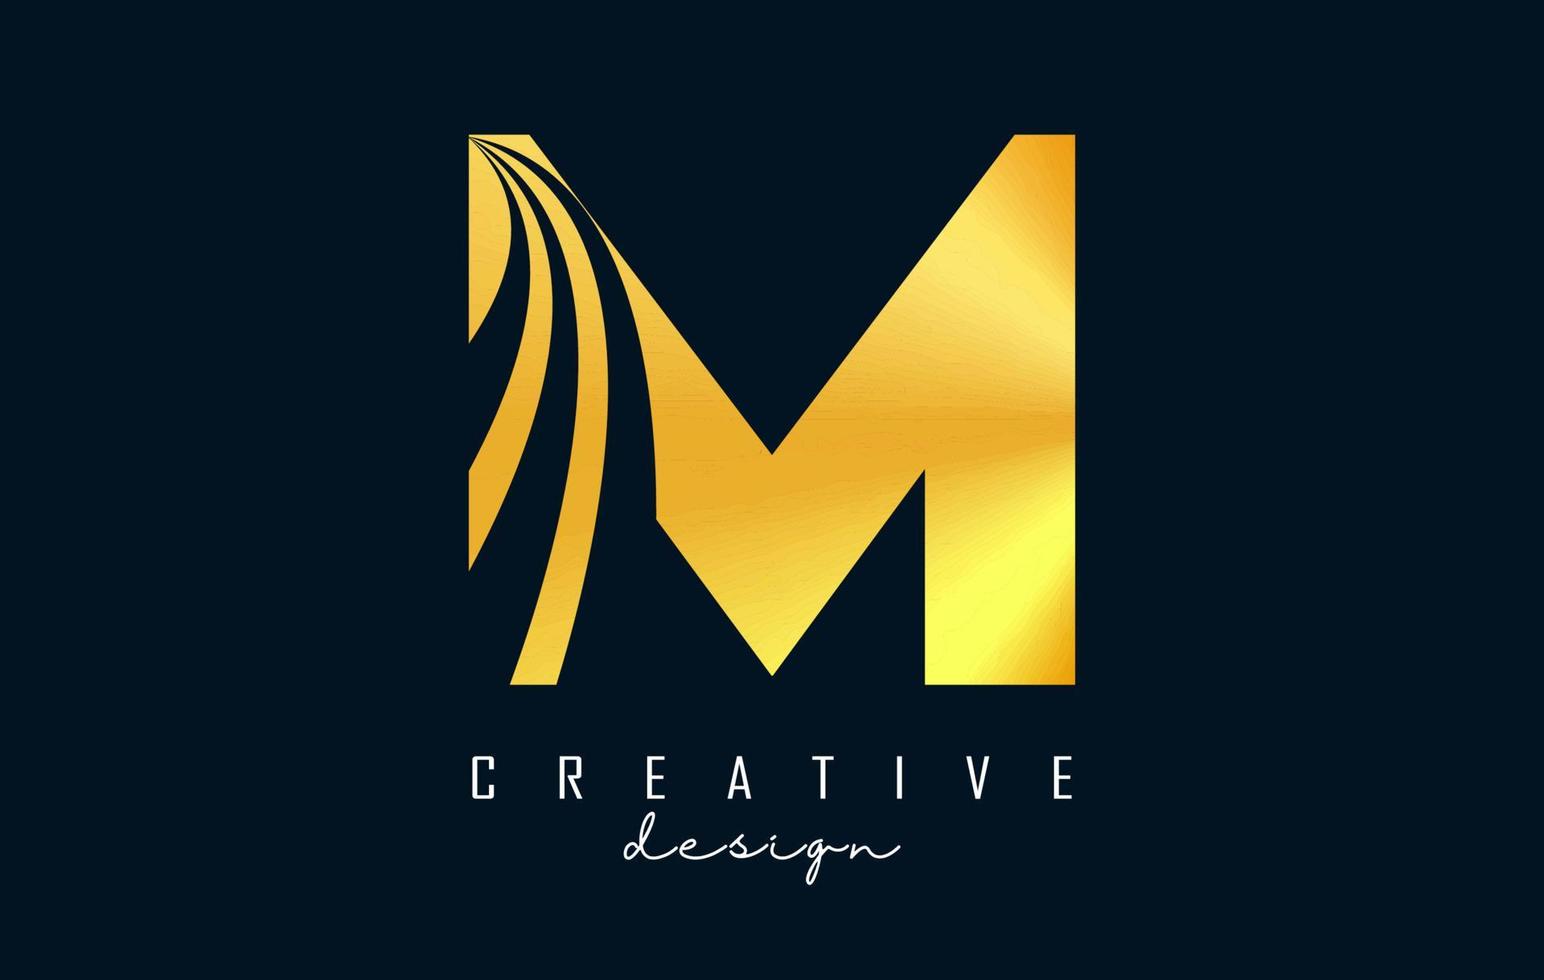 logo creativo lettera d'oro m con linee guida e concept design stradale. lettera m con disegno geometrico. vettore